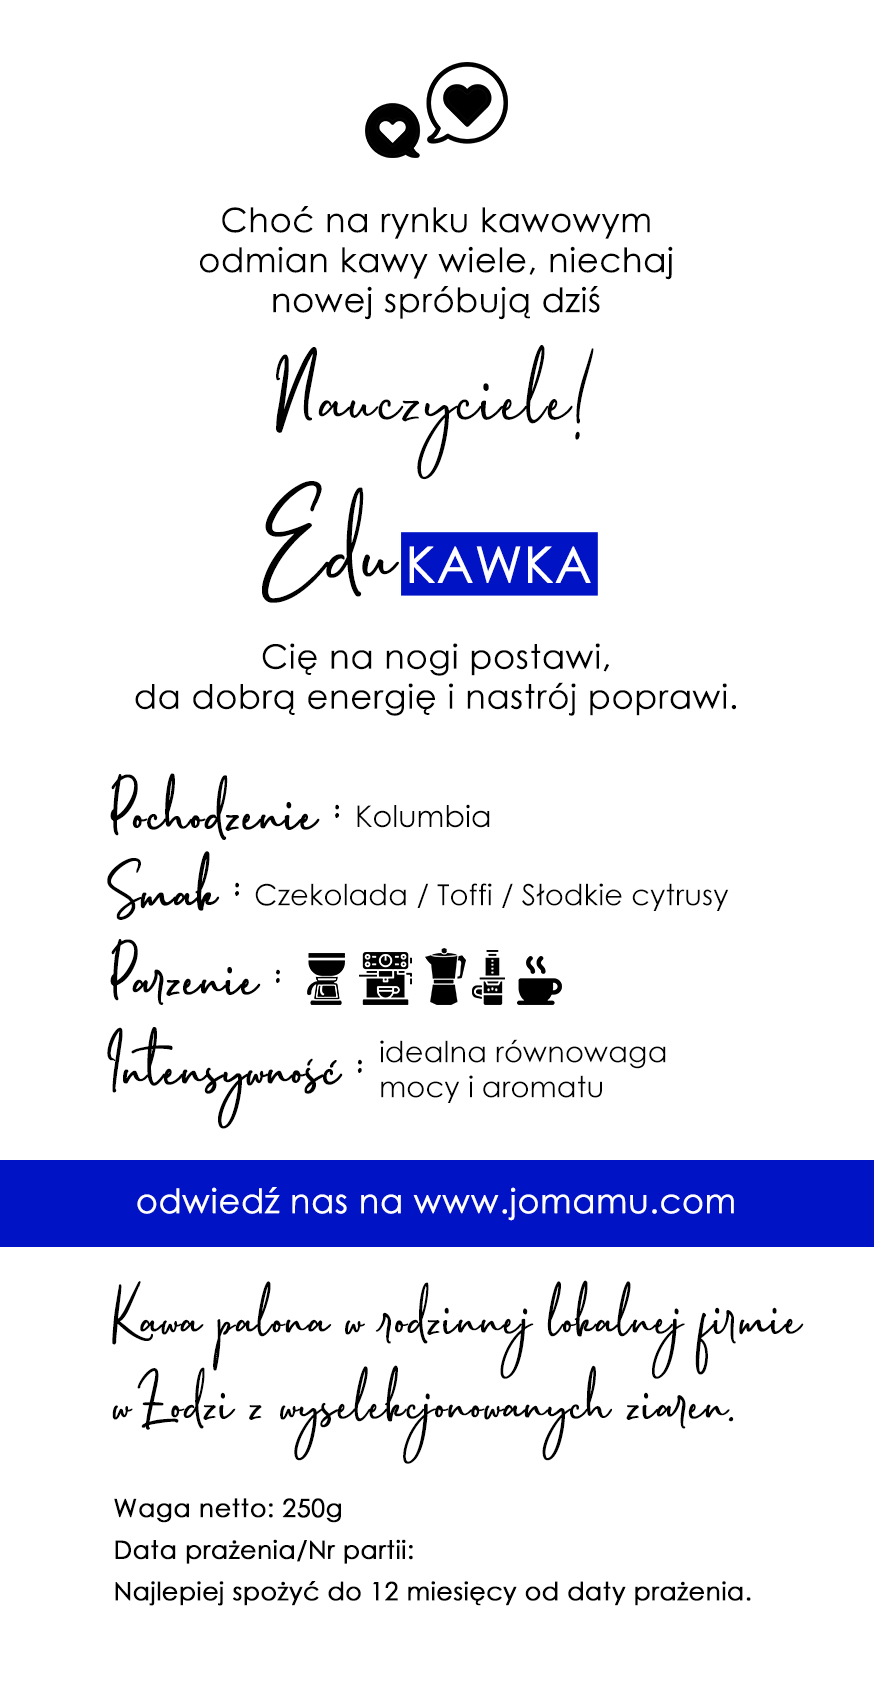 Edu KAWKA - Kawa dla Nauczyciela i Pedagoga w BIO degradowalnym opakowaniu